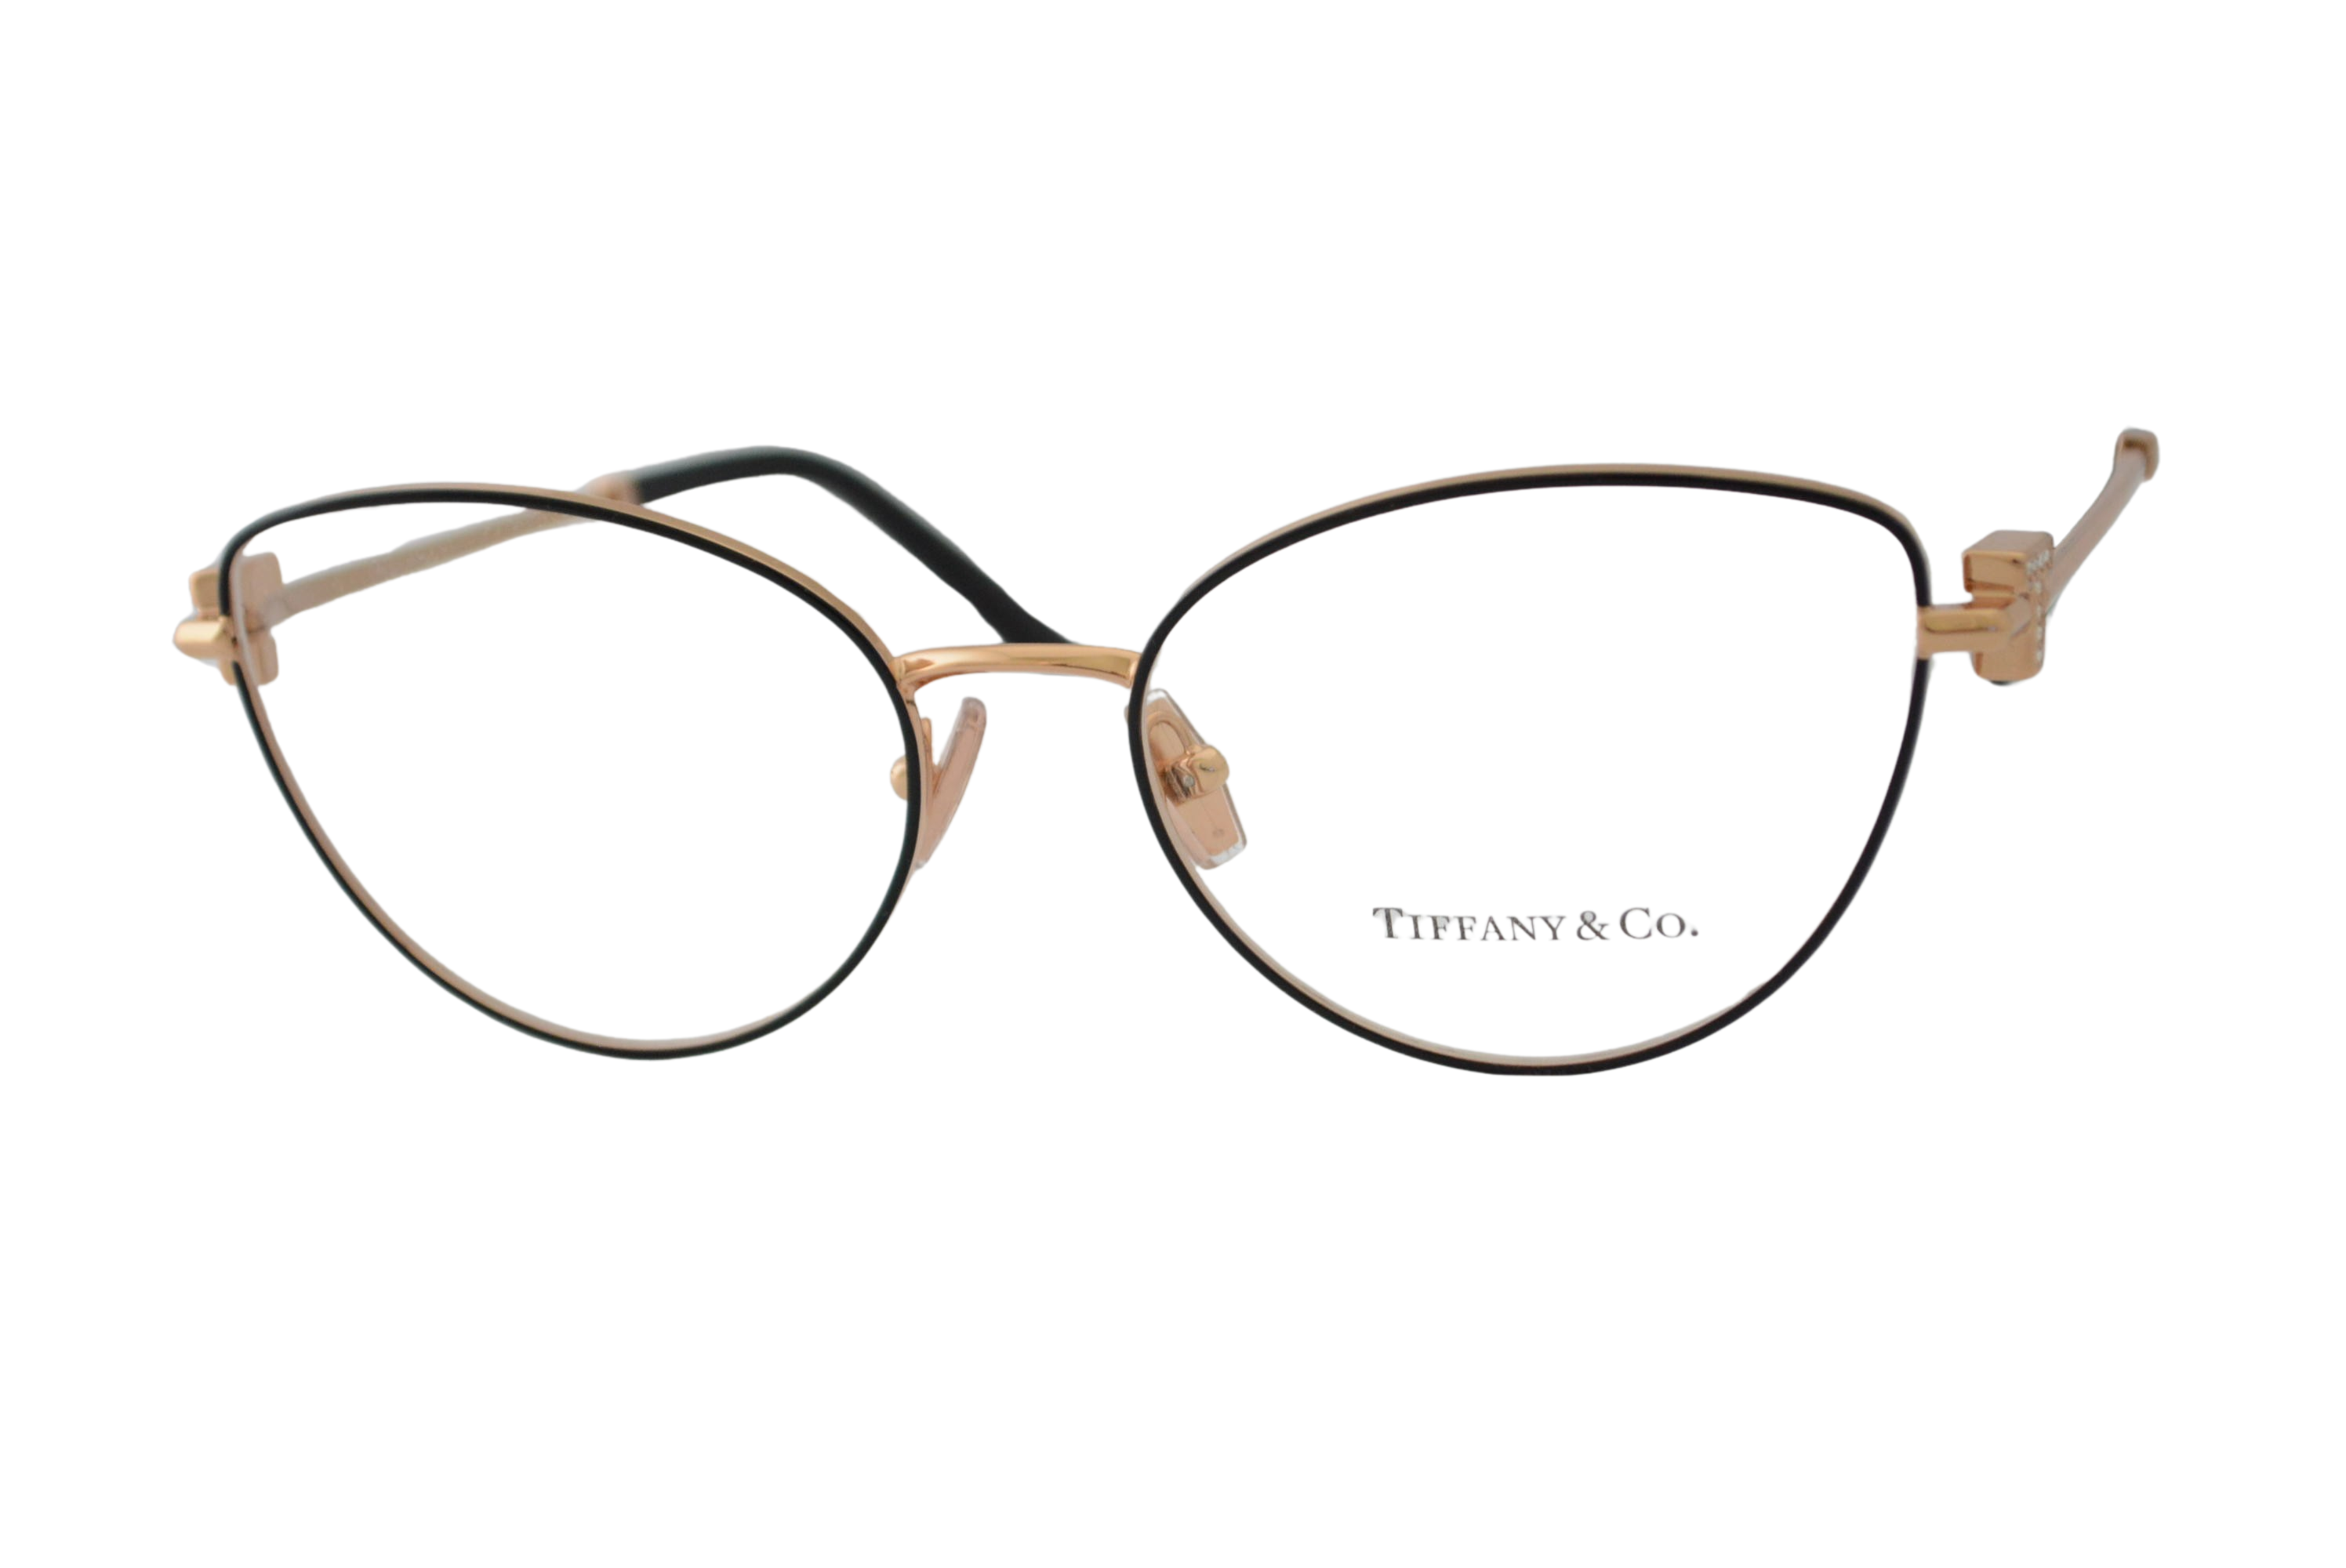 armação de óculos Tiffany mod TF1159-b 6162